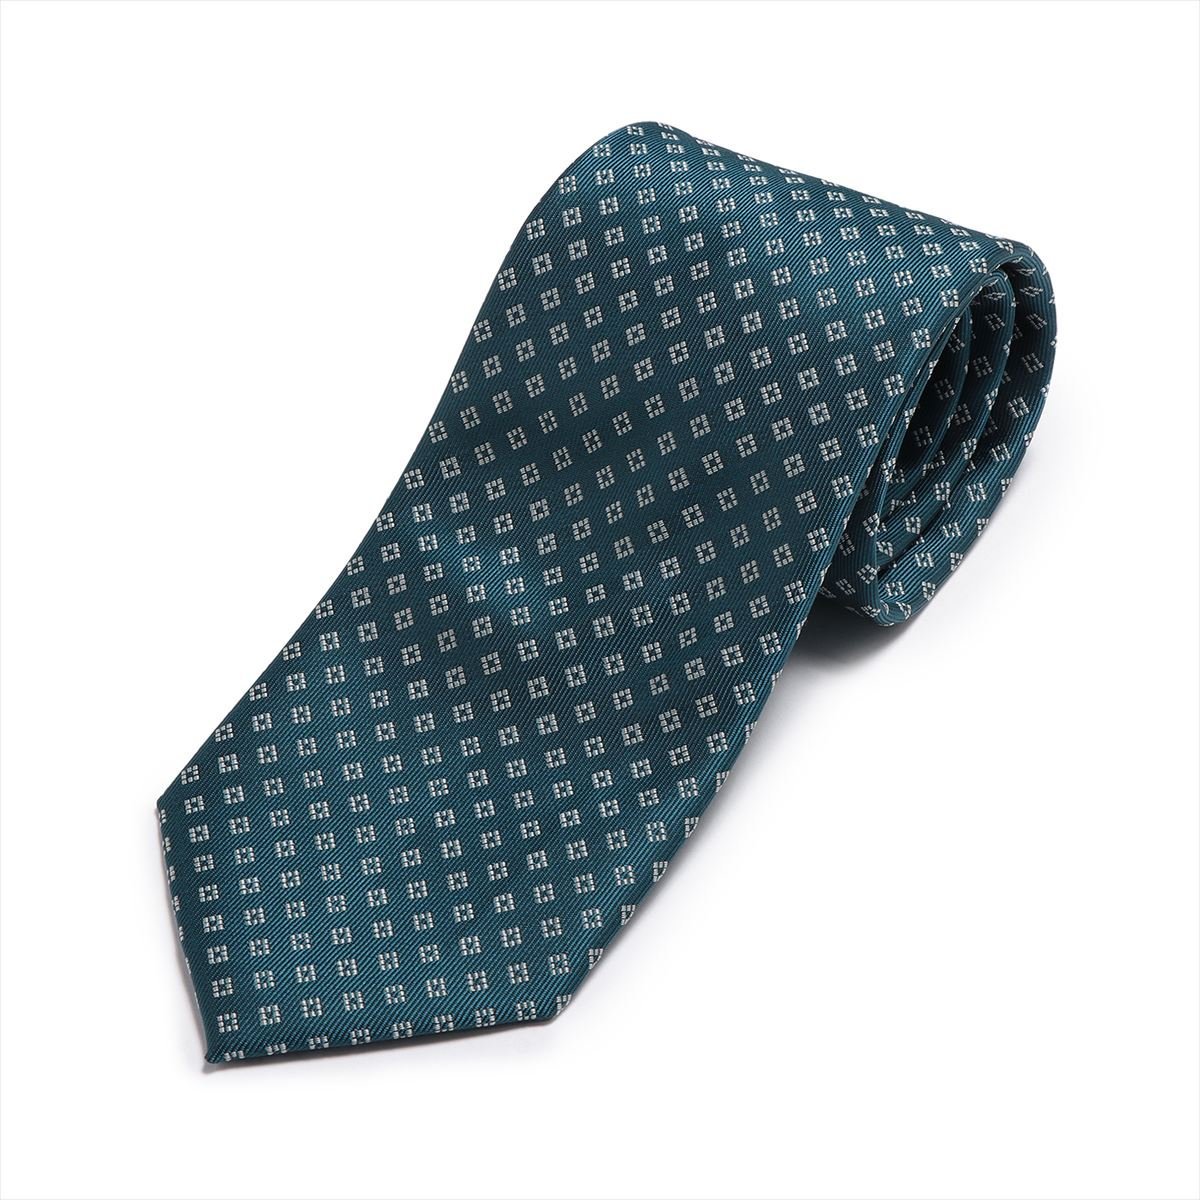 TOKYO SHIRTS（トーキョーシャツ）ネクタイ ブルー ビジネス フォーマル BM15I100GBAK1PA-15-951忙しい毎日に便利な洗濯可能なネクタイ。コーディネイトに取り入れやすいベーシックな色柄が◎。シンプルなネクタイは色...